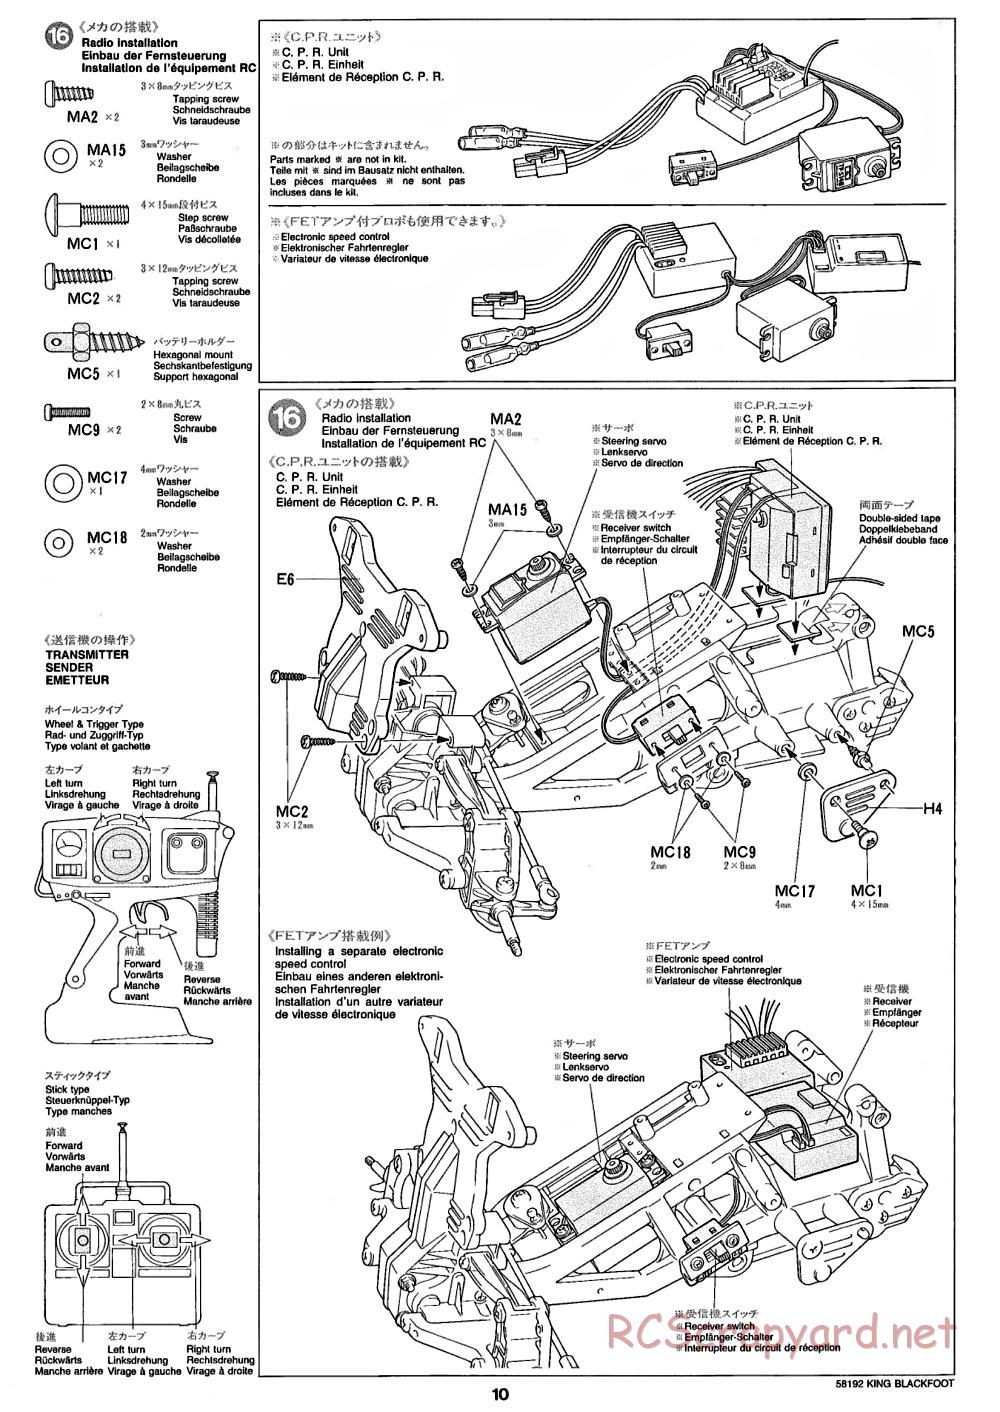 Tamiya - King Blackfoot Chassis - Manual - Page 10